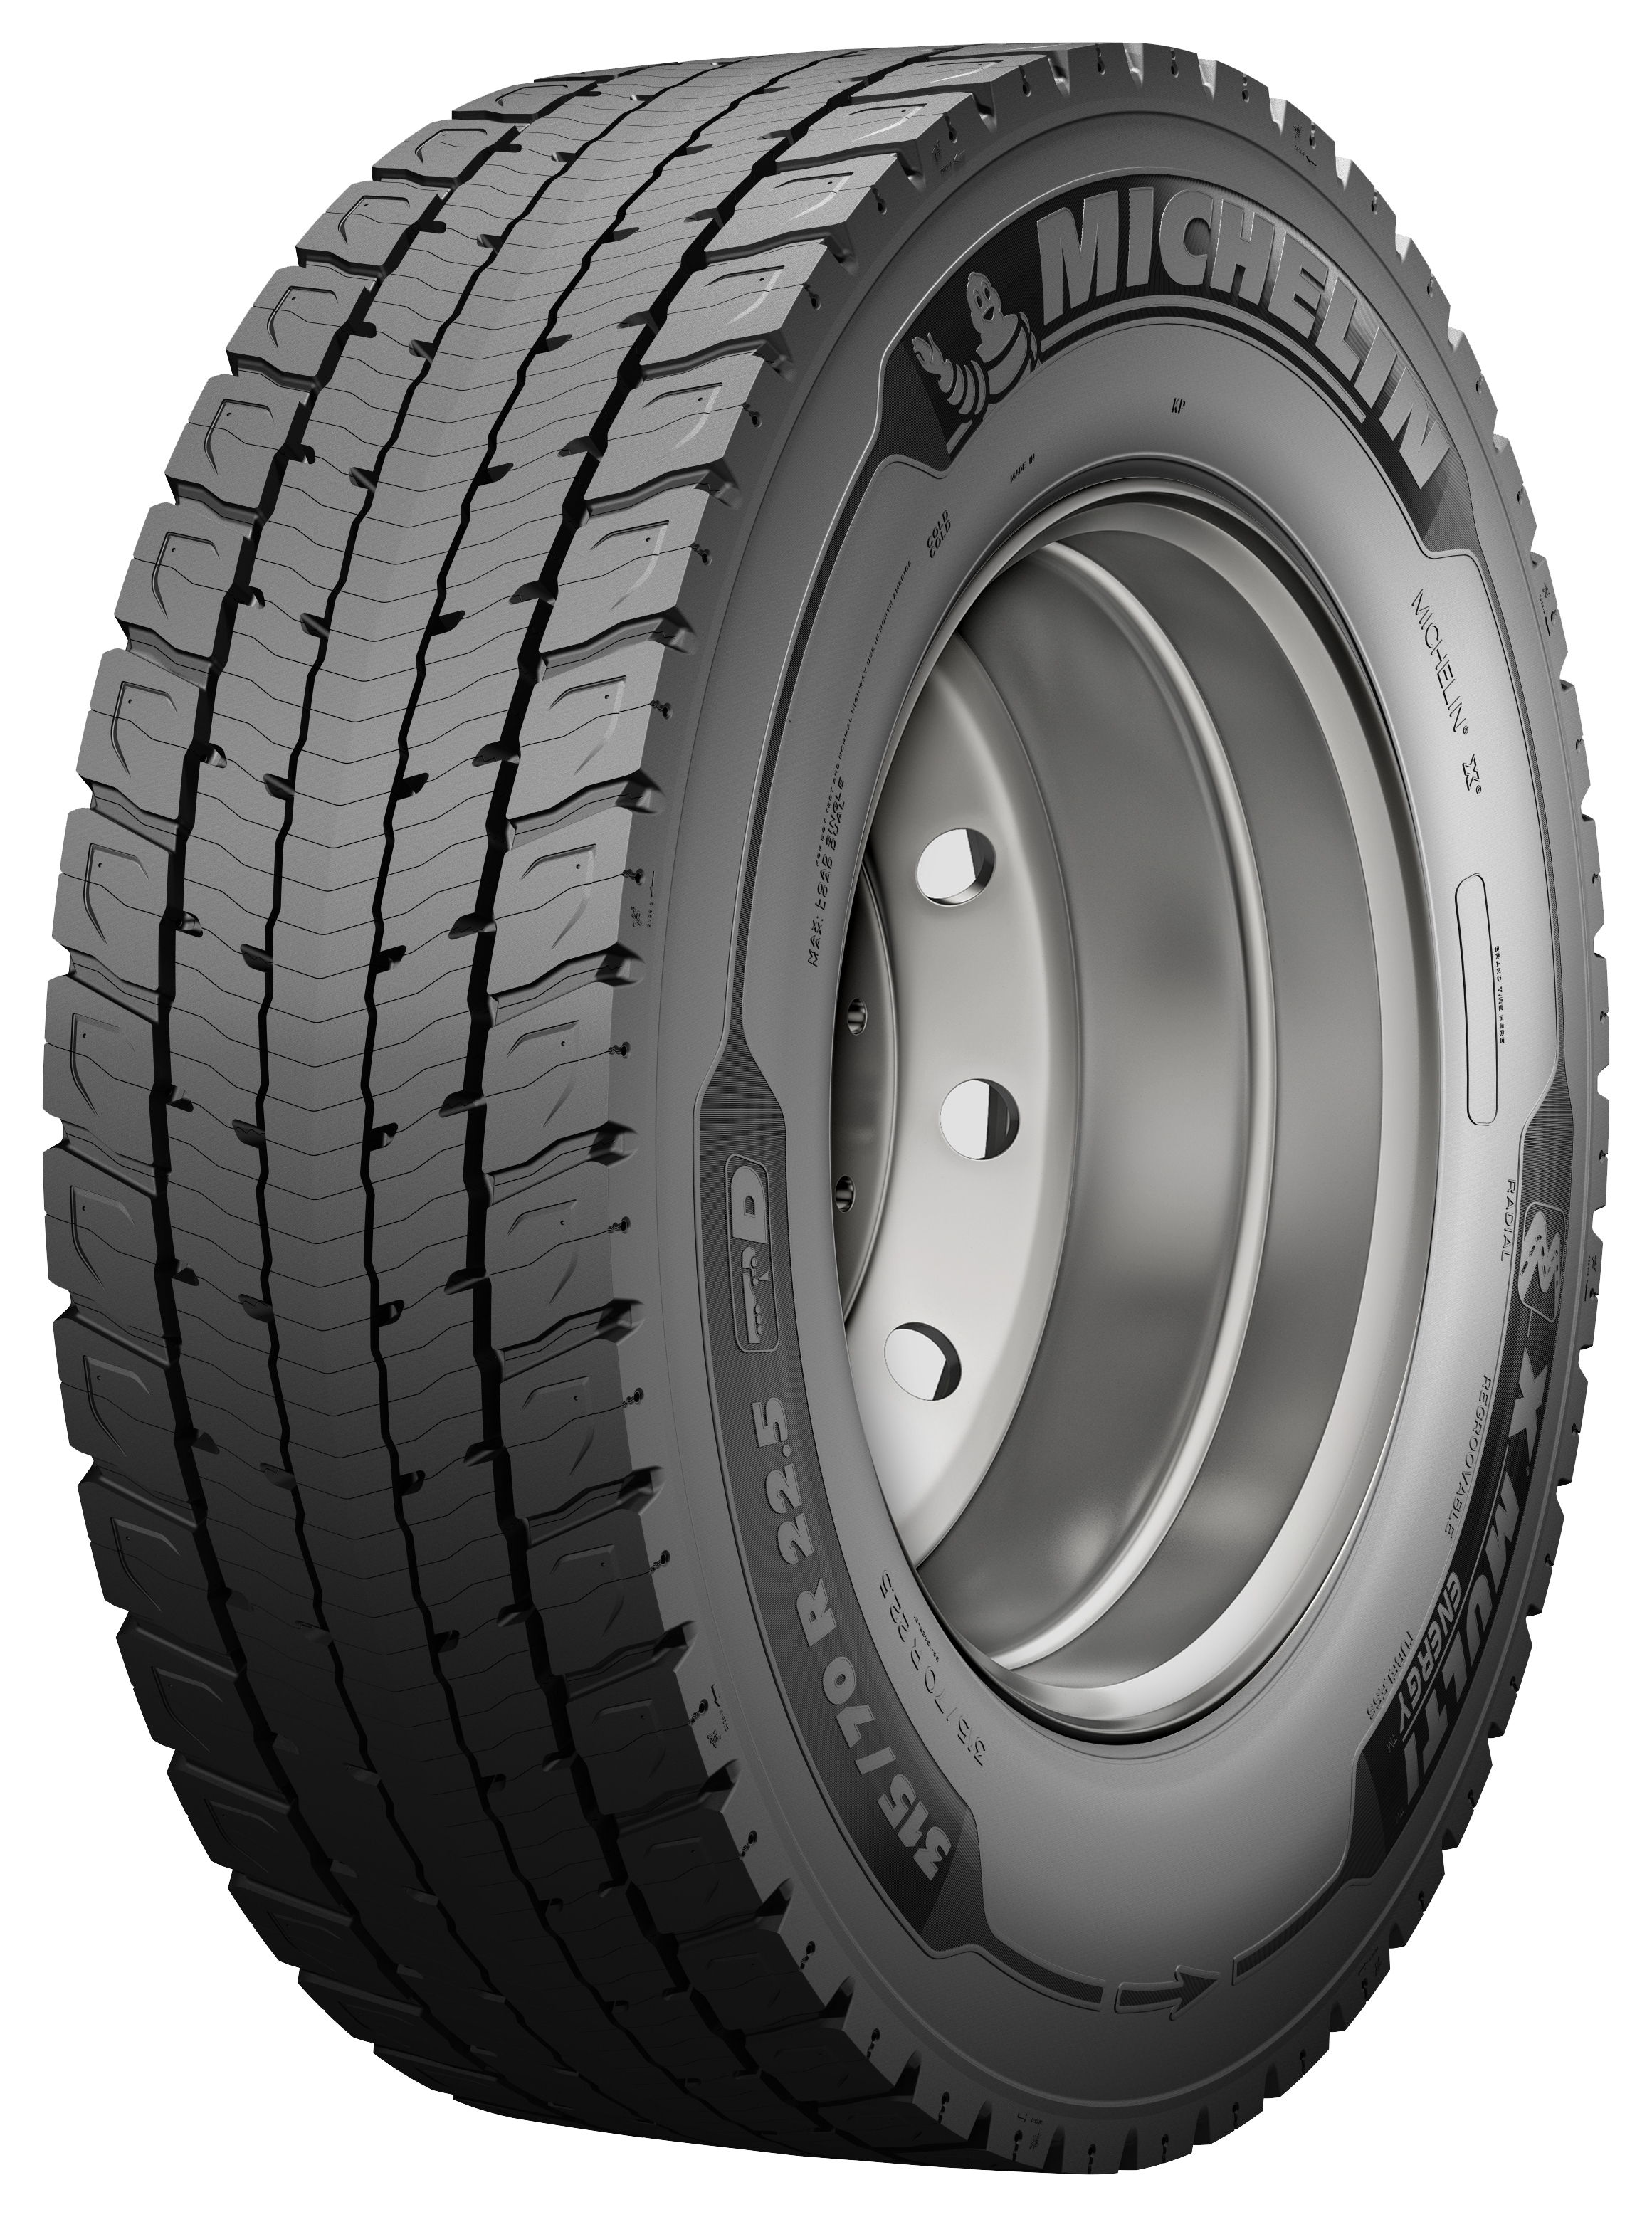 Gomme Nuove Michelin 315/70 R22.5 154/150L X MULTI ENERGY D 70 M+S (8.00mm) pneumatici nuovi Estivo